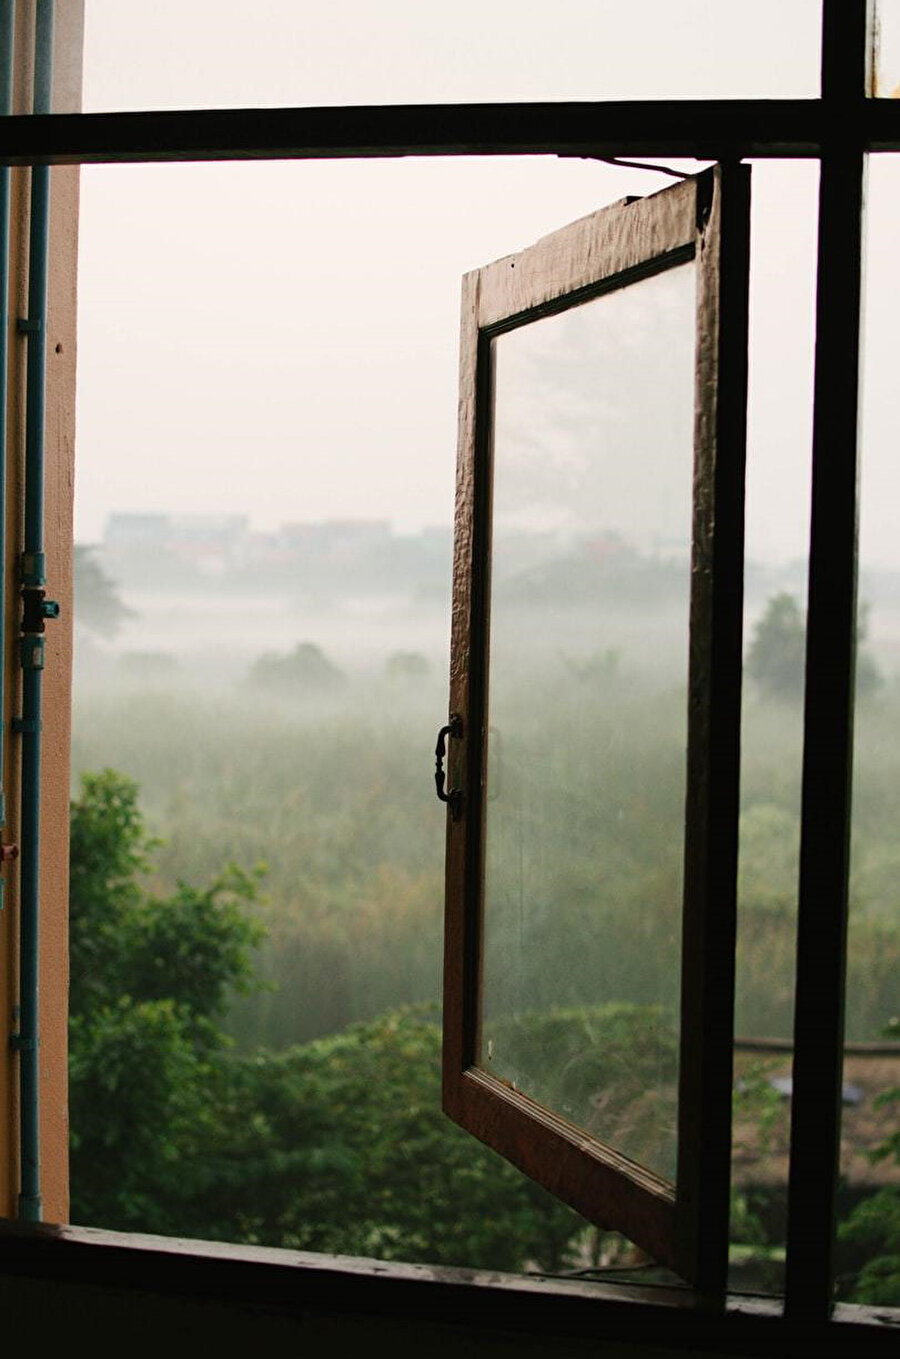 Pencereler açılır, balkona çıkılır ve kendimizi dinlemenin teneffüsünde sanki başka bir mekândan seyre konulur dünya.